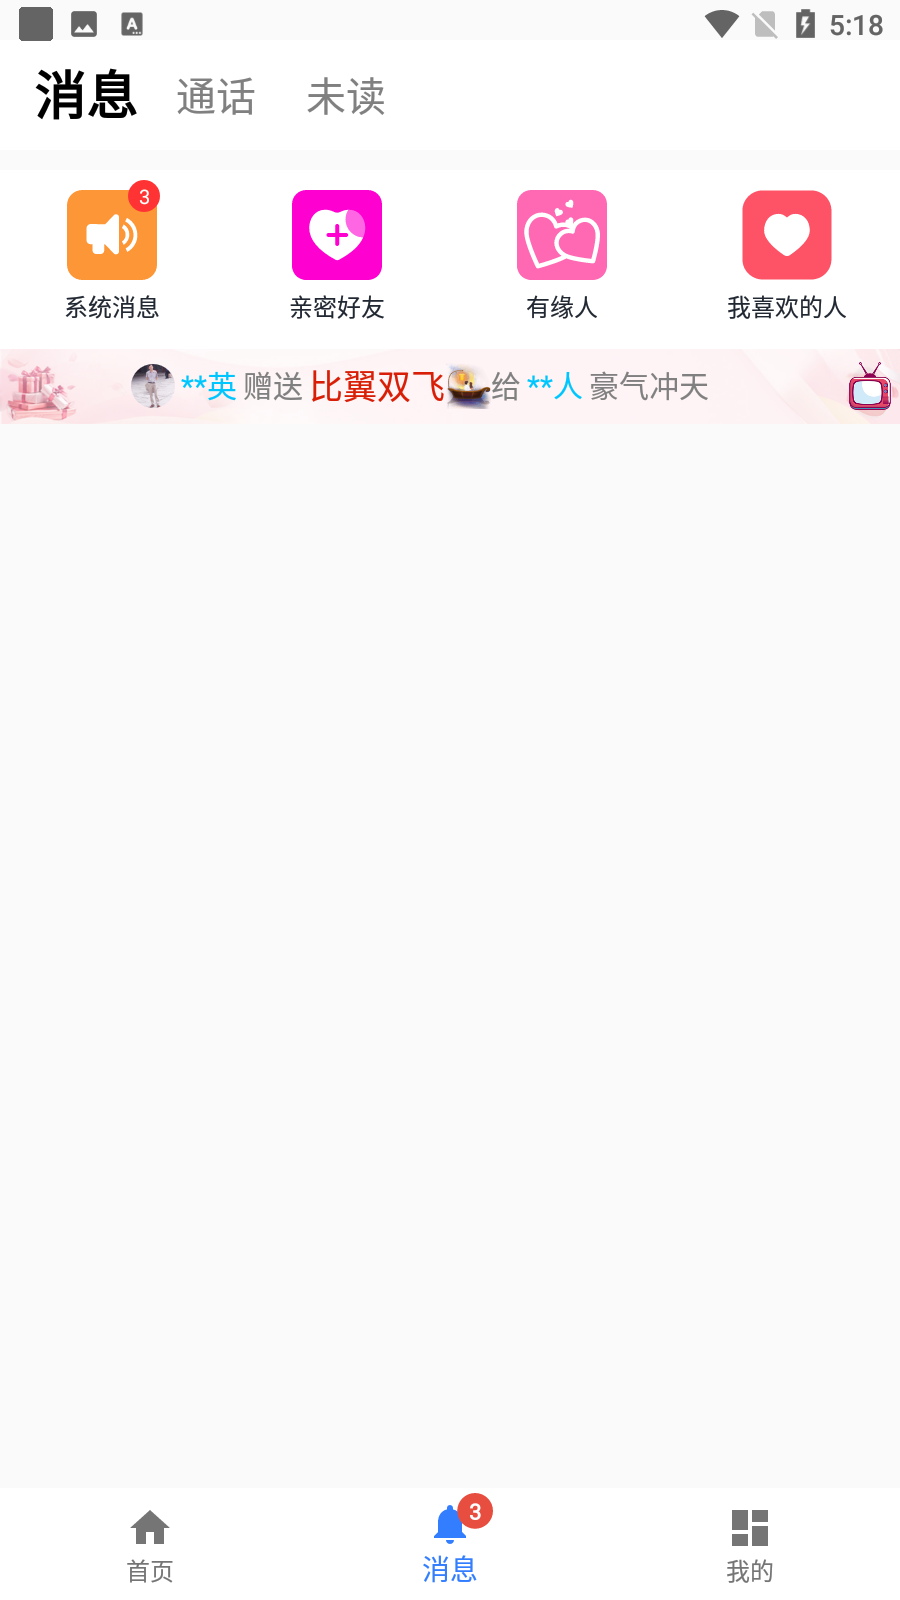 佳人有缘app 3.10.04_release 手机版3.12.04_release 手机版